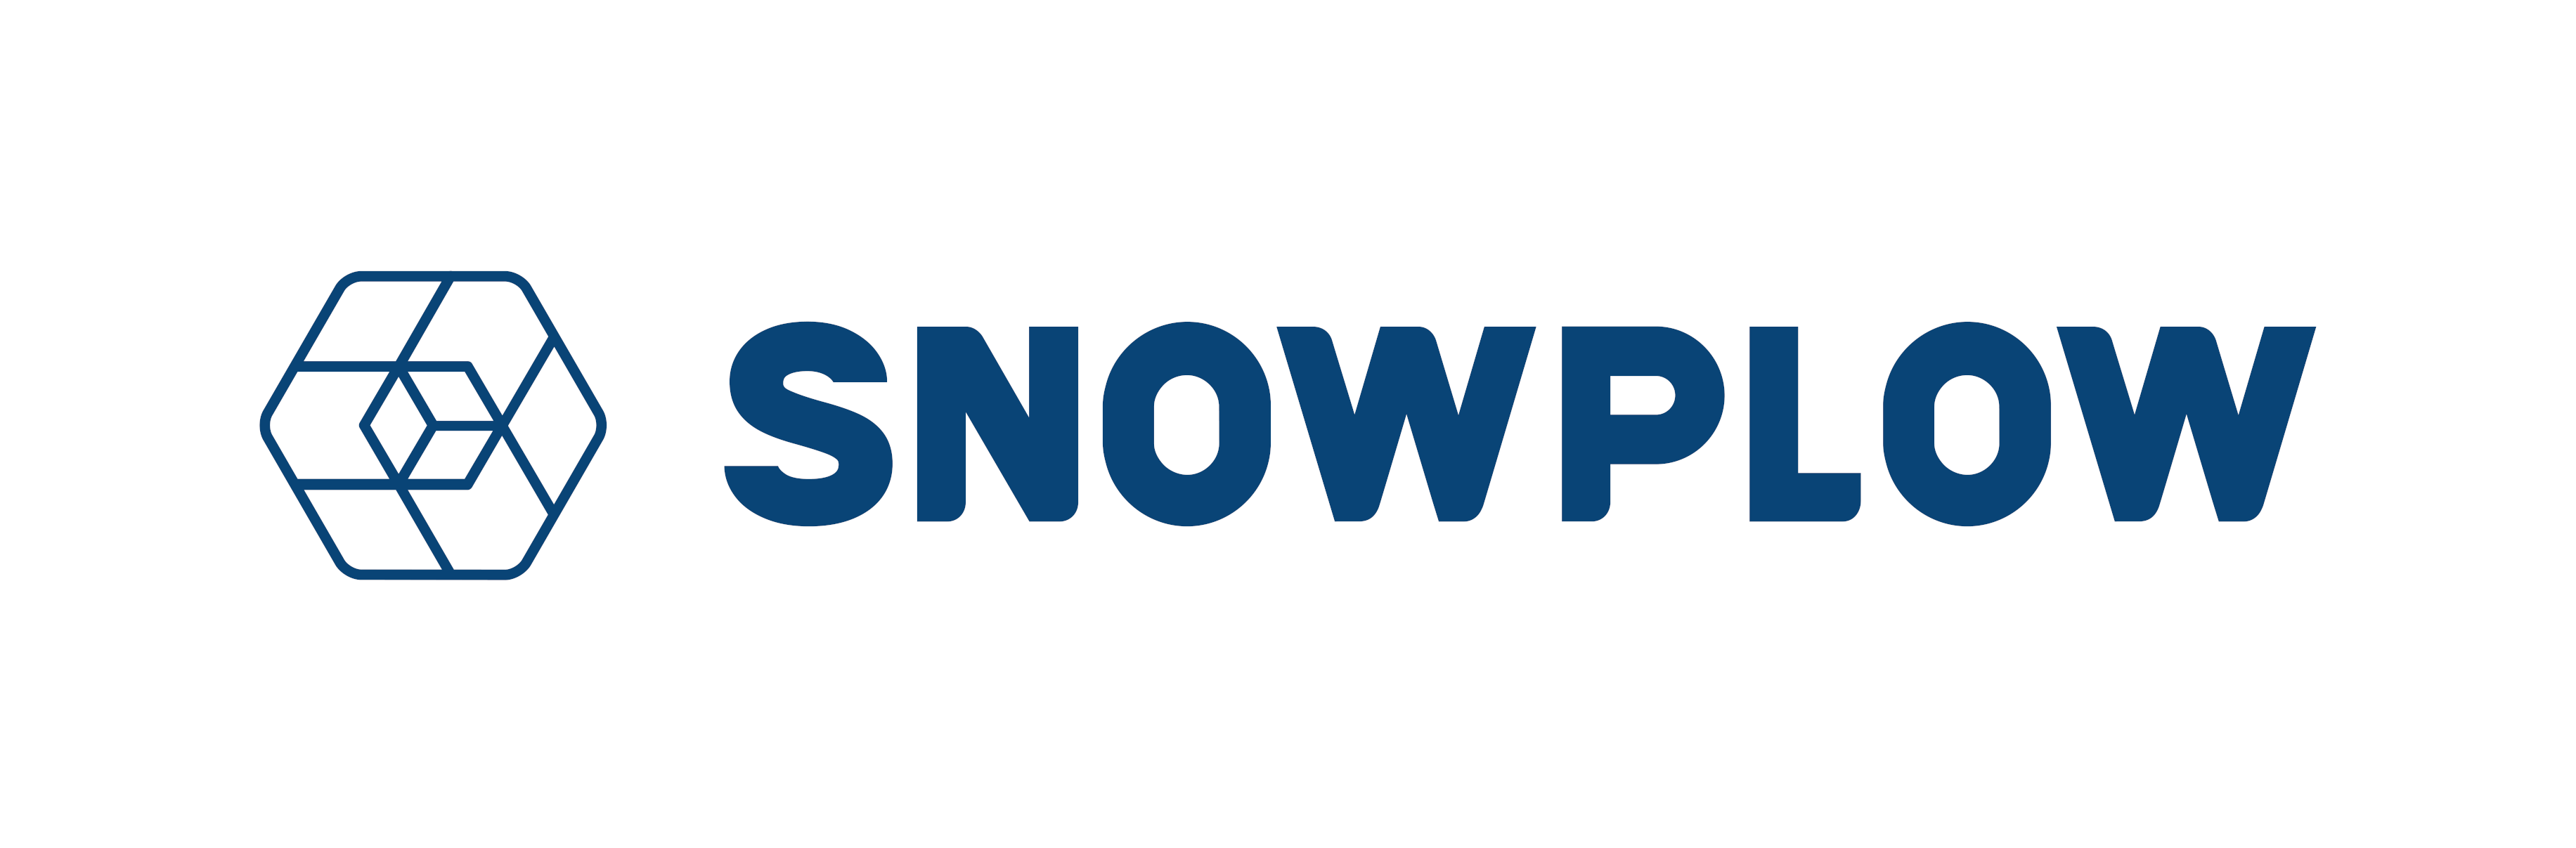 snowplow-logo